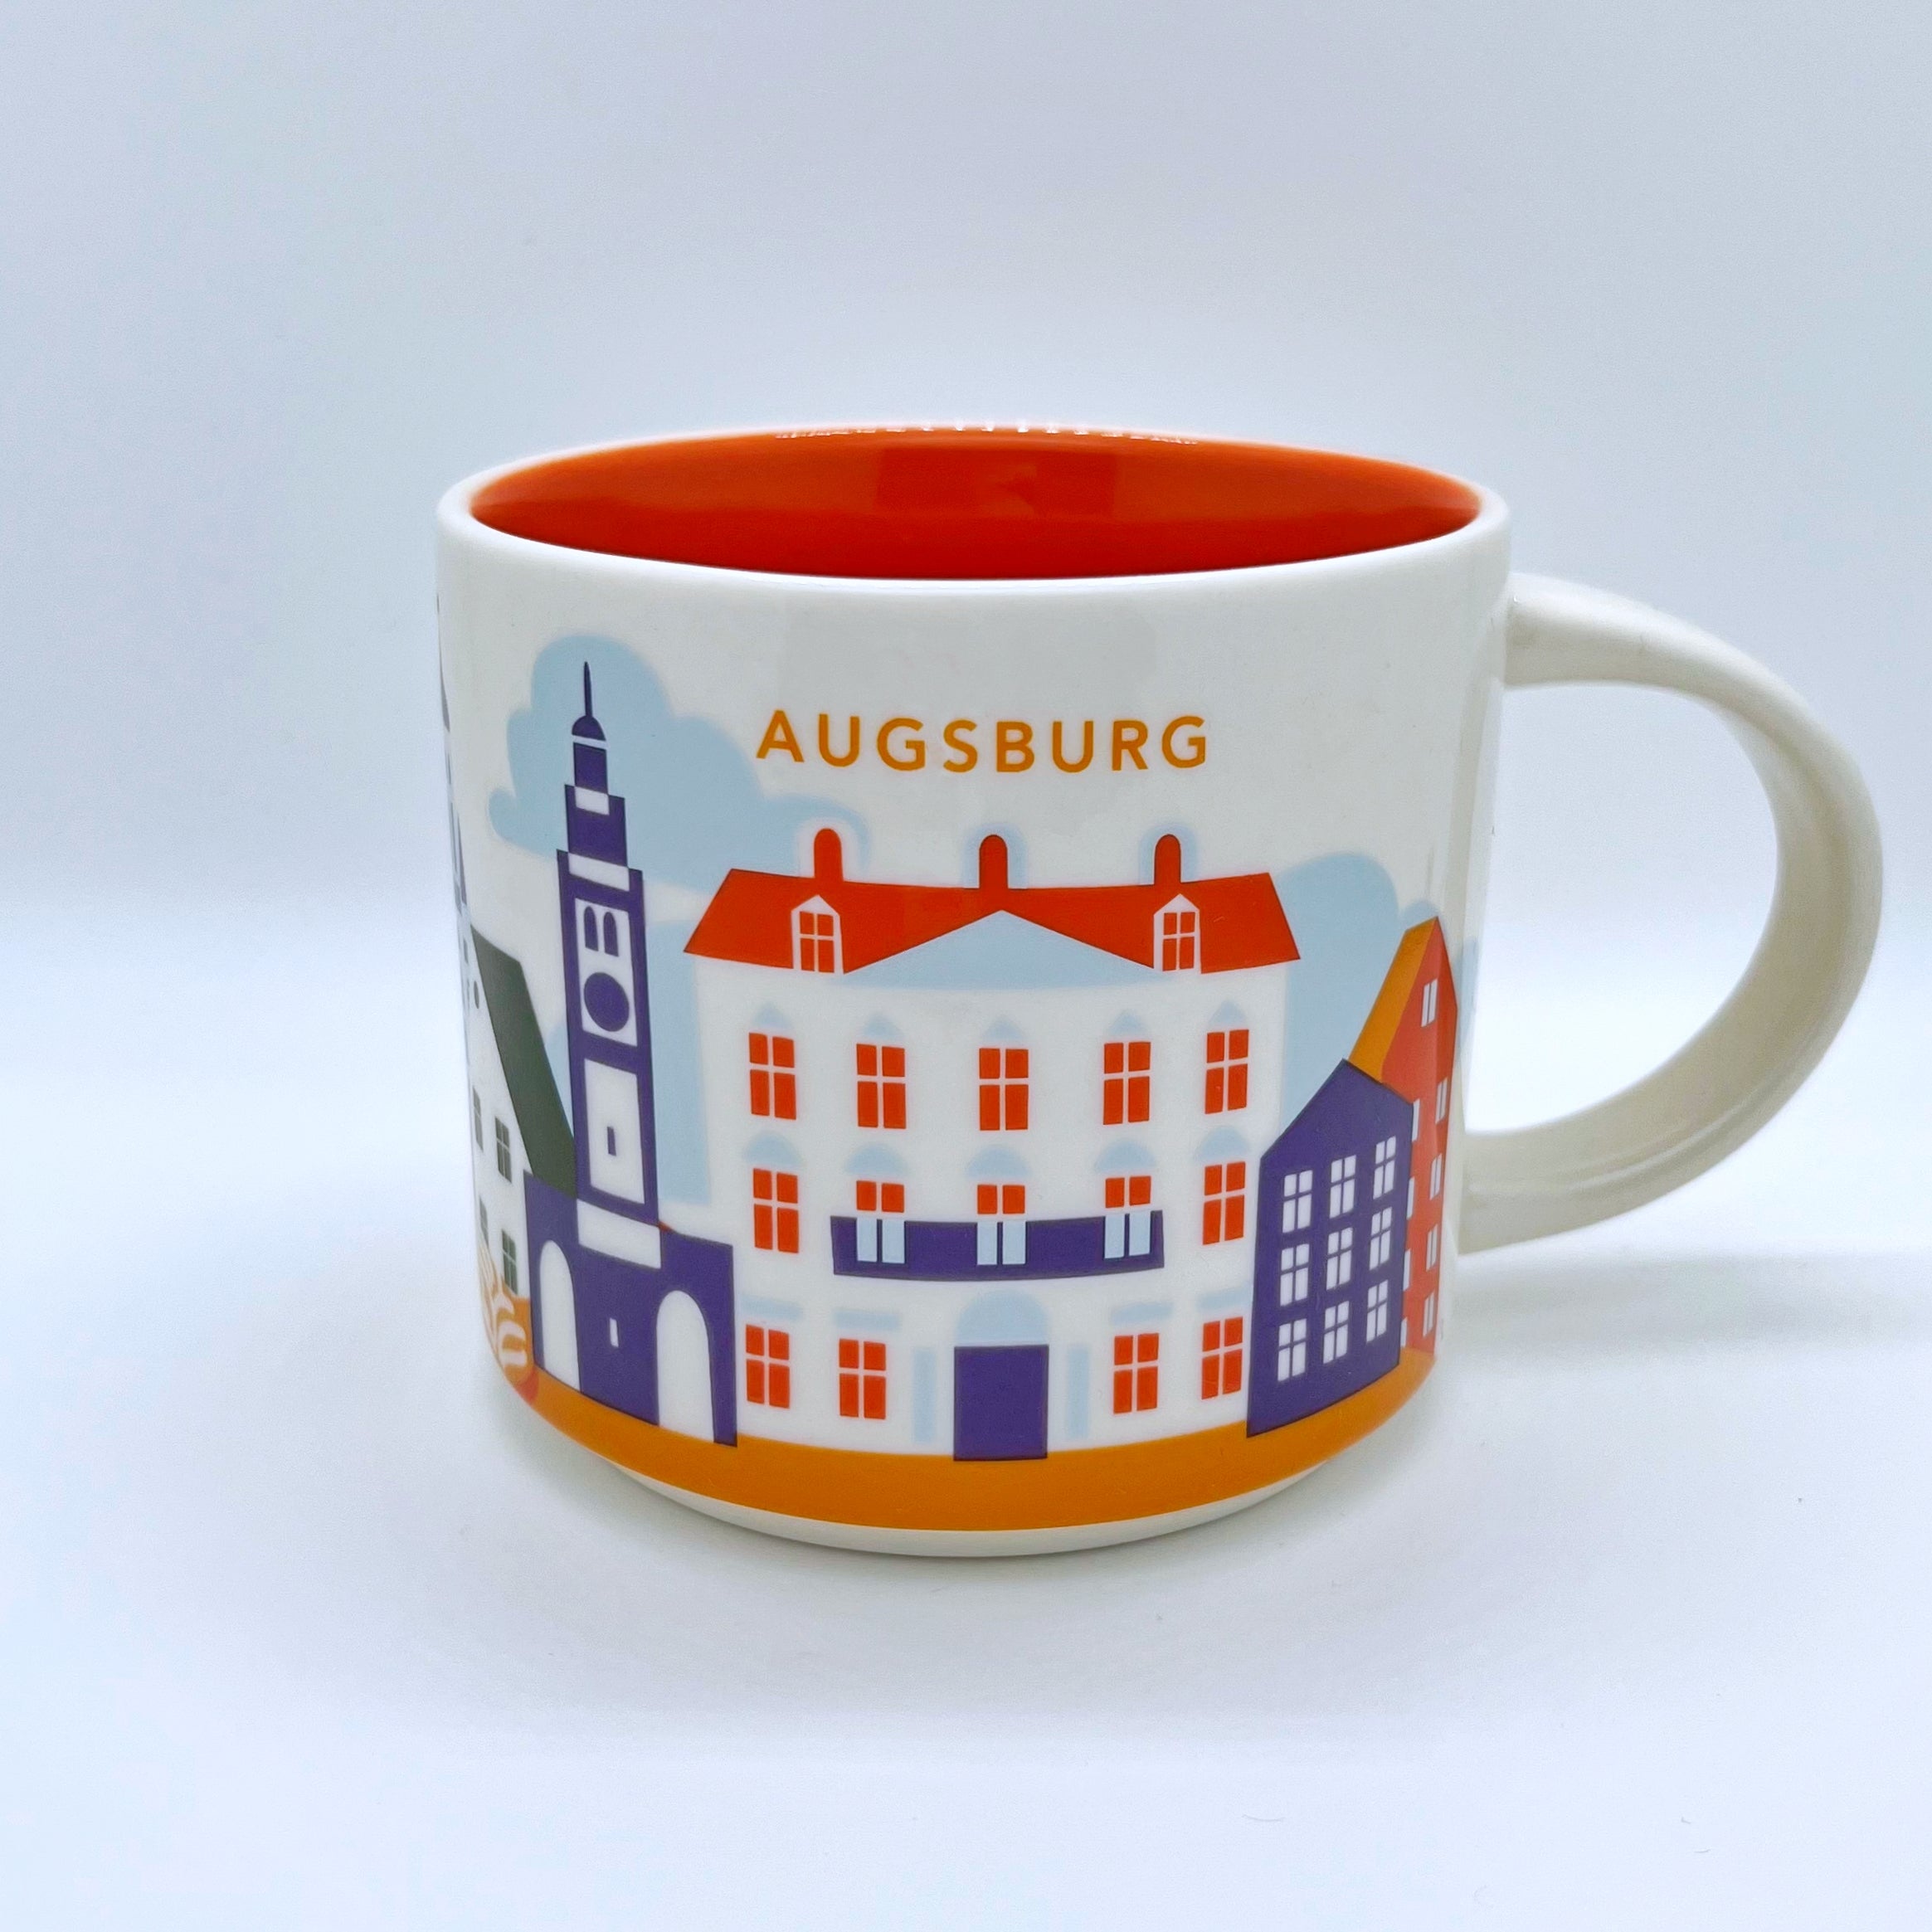 Kaffee Tee und Cappuccino Tasse von Starbucks mit gemalten Bildern aus der Stadt Augsburg